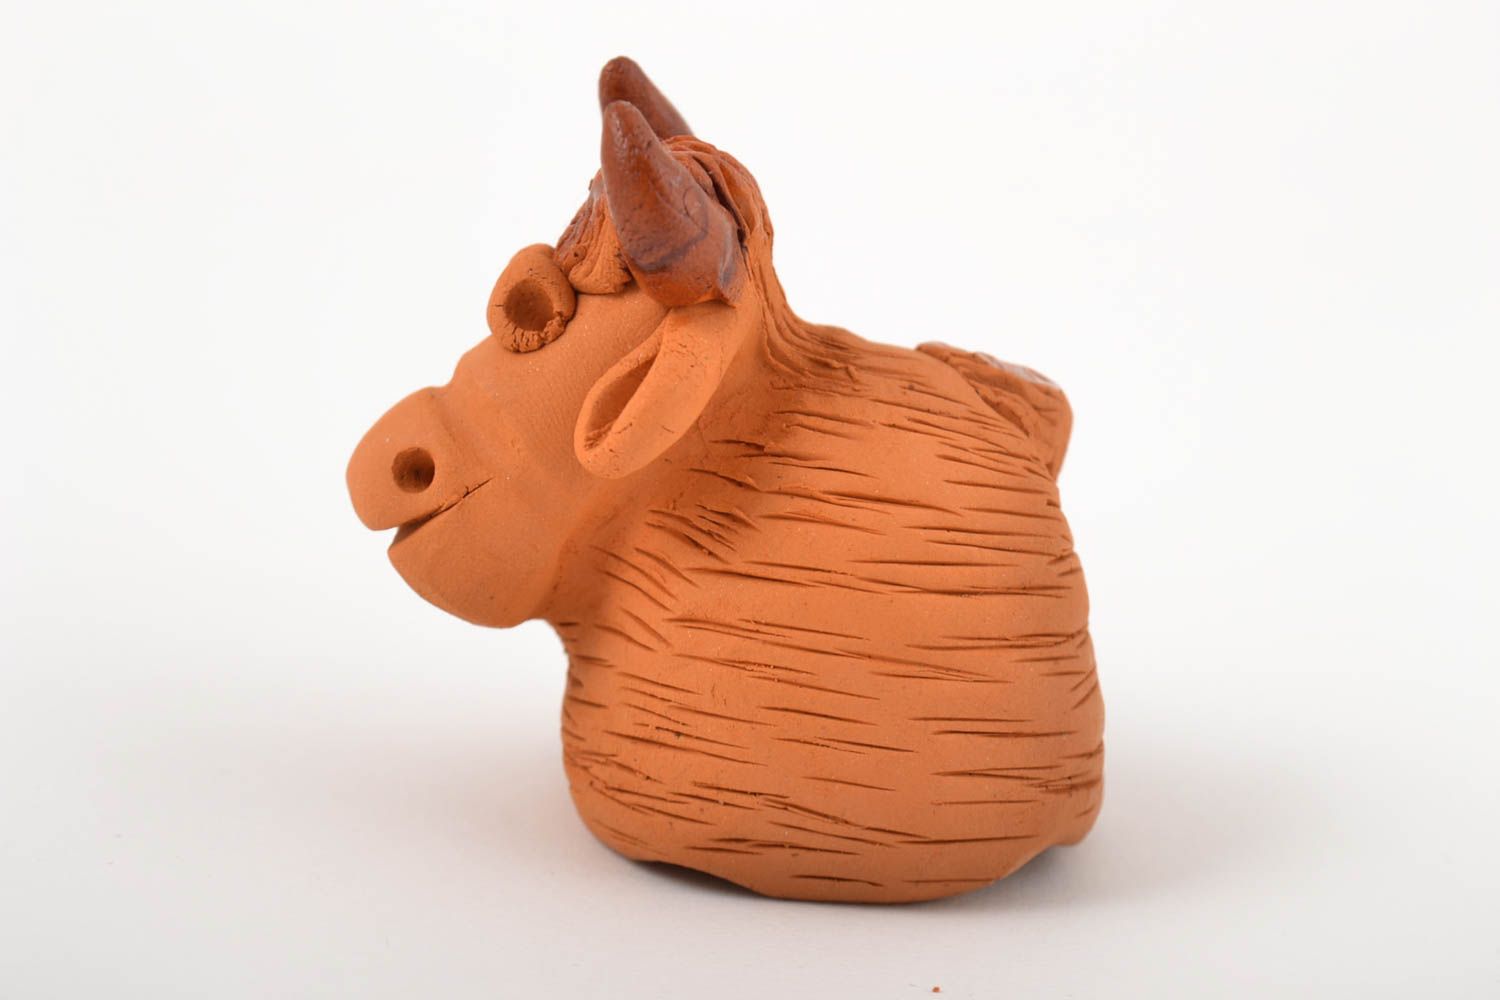 Figurina fatta a mano in ceramica carino animaletto souvenir in terracotta foto 3